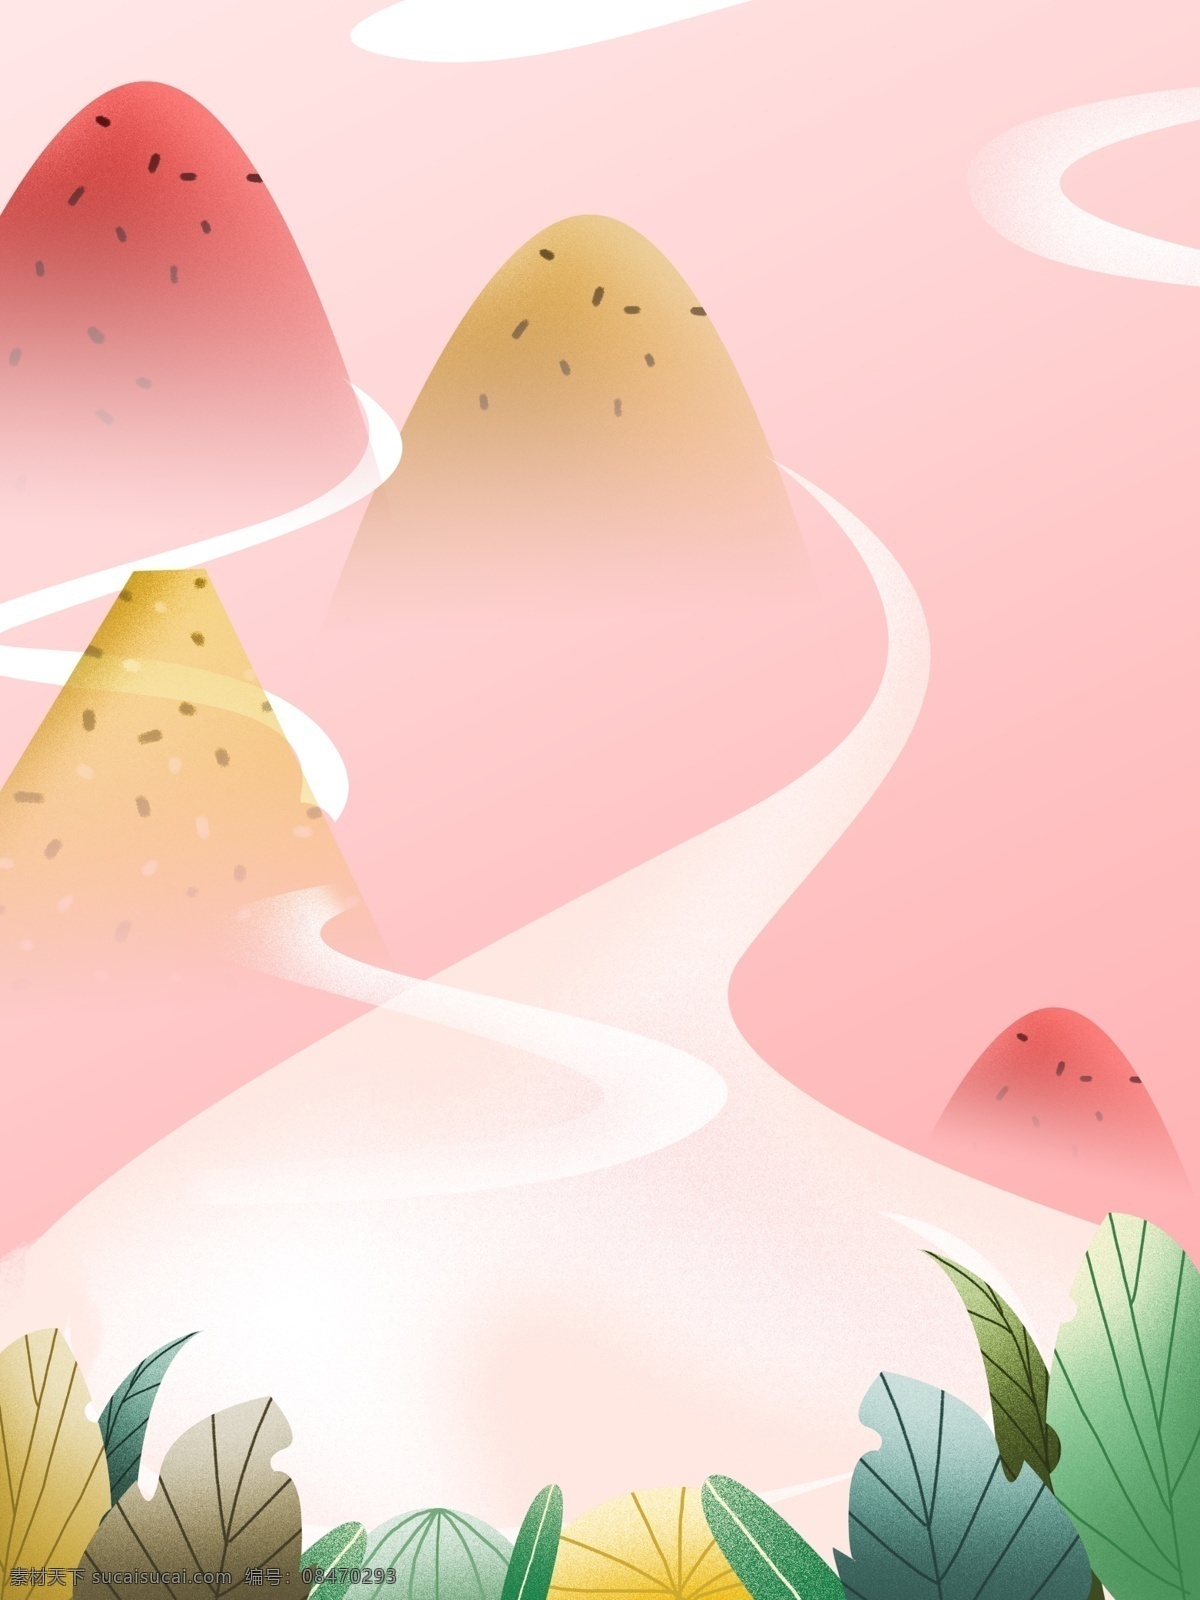 粉红色背景 背景 粉红色 树 山 插画 道路 卡通设计